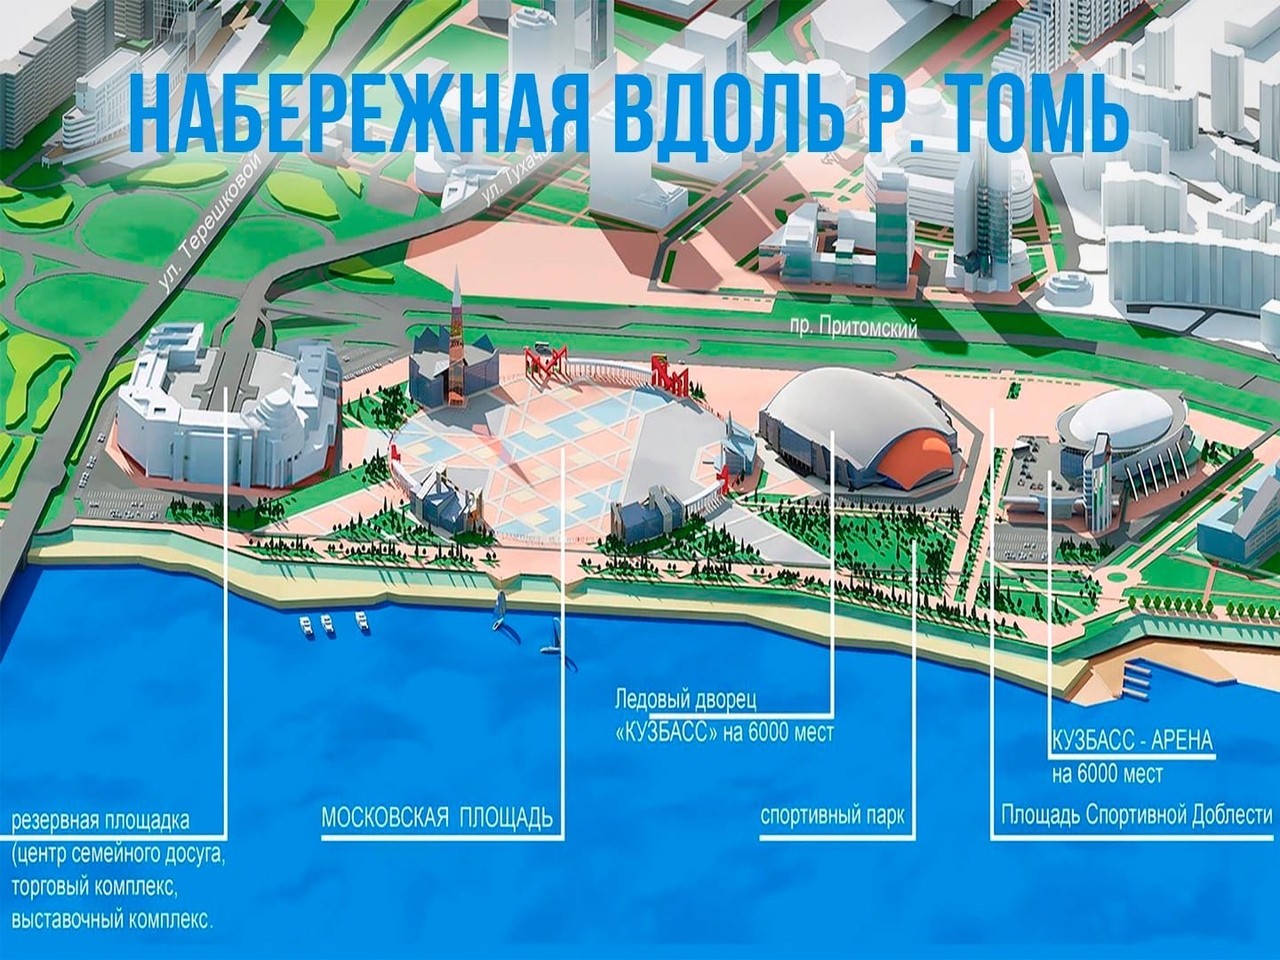 Установка опор ОГК для благоустройства площади в городе Кемерово (Кузбасс)